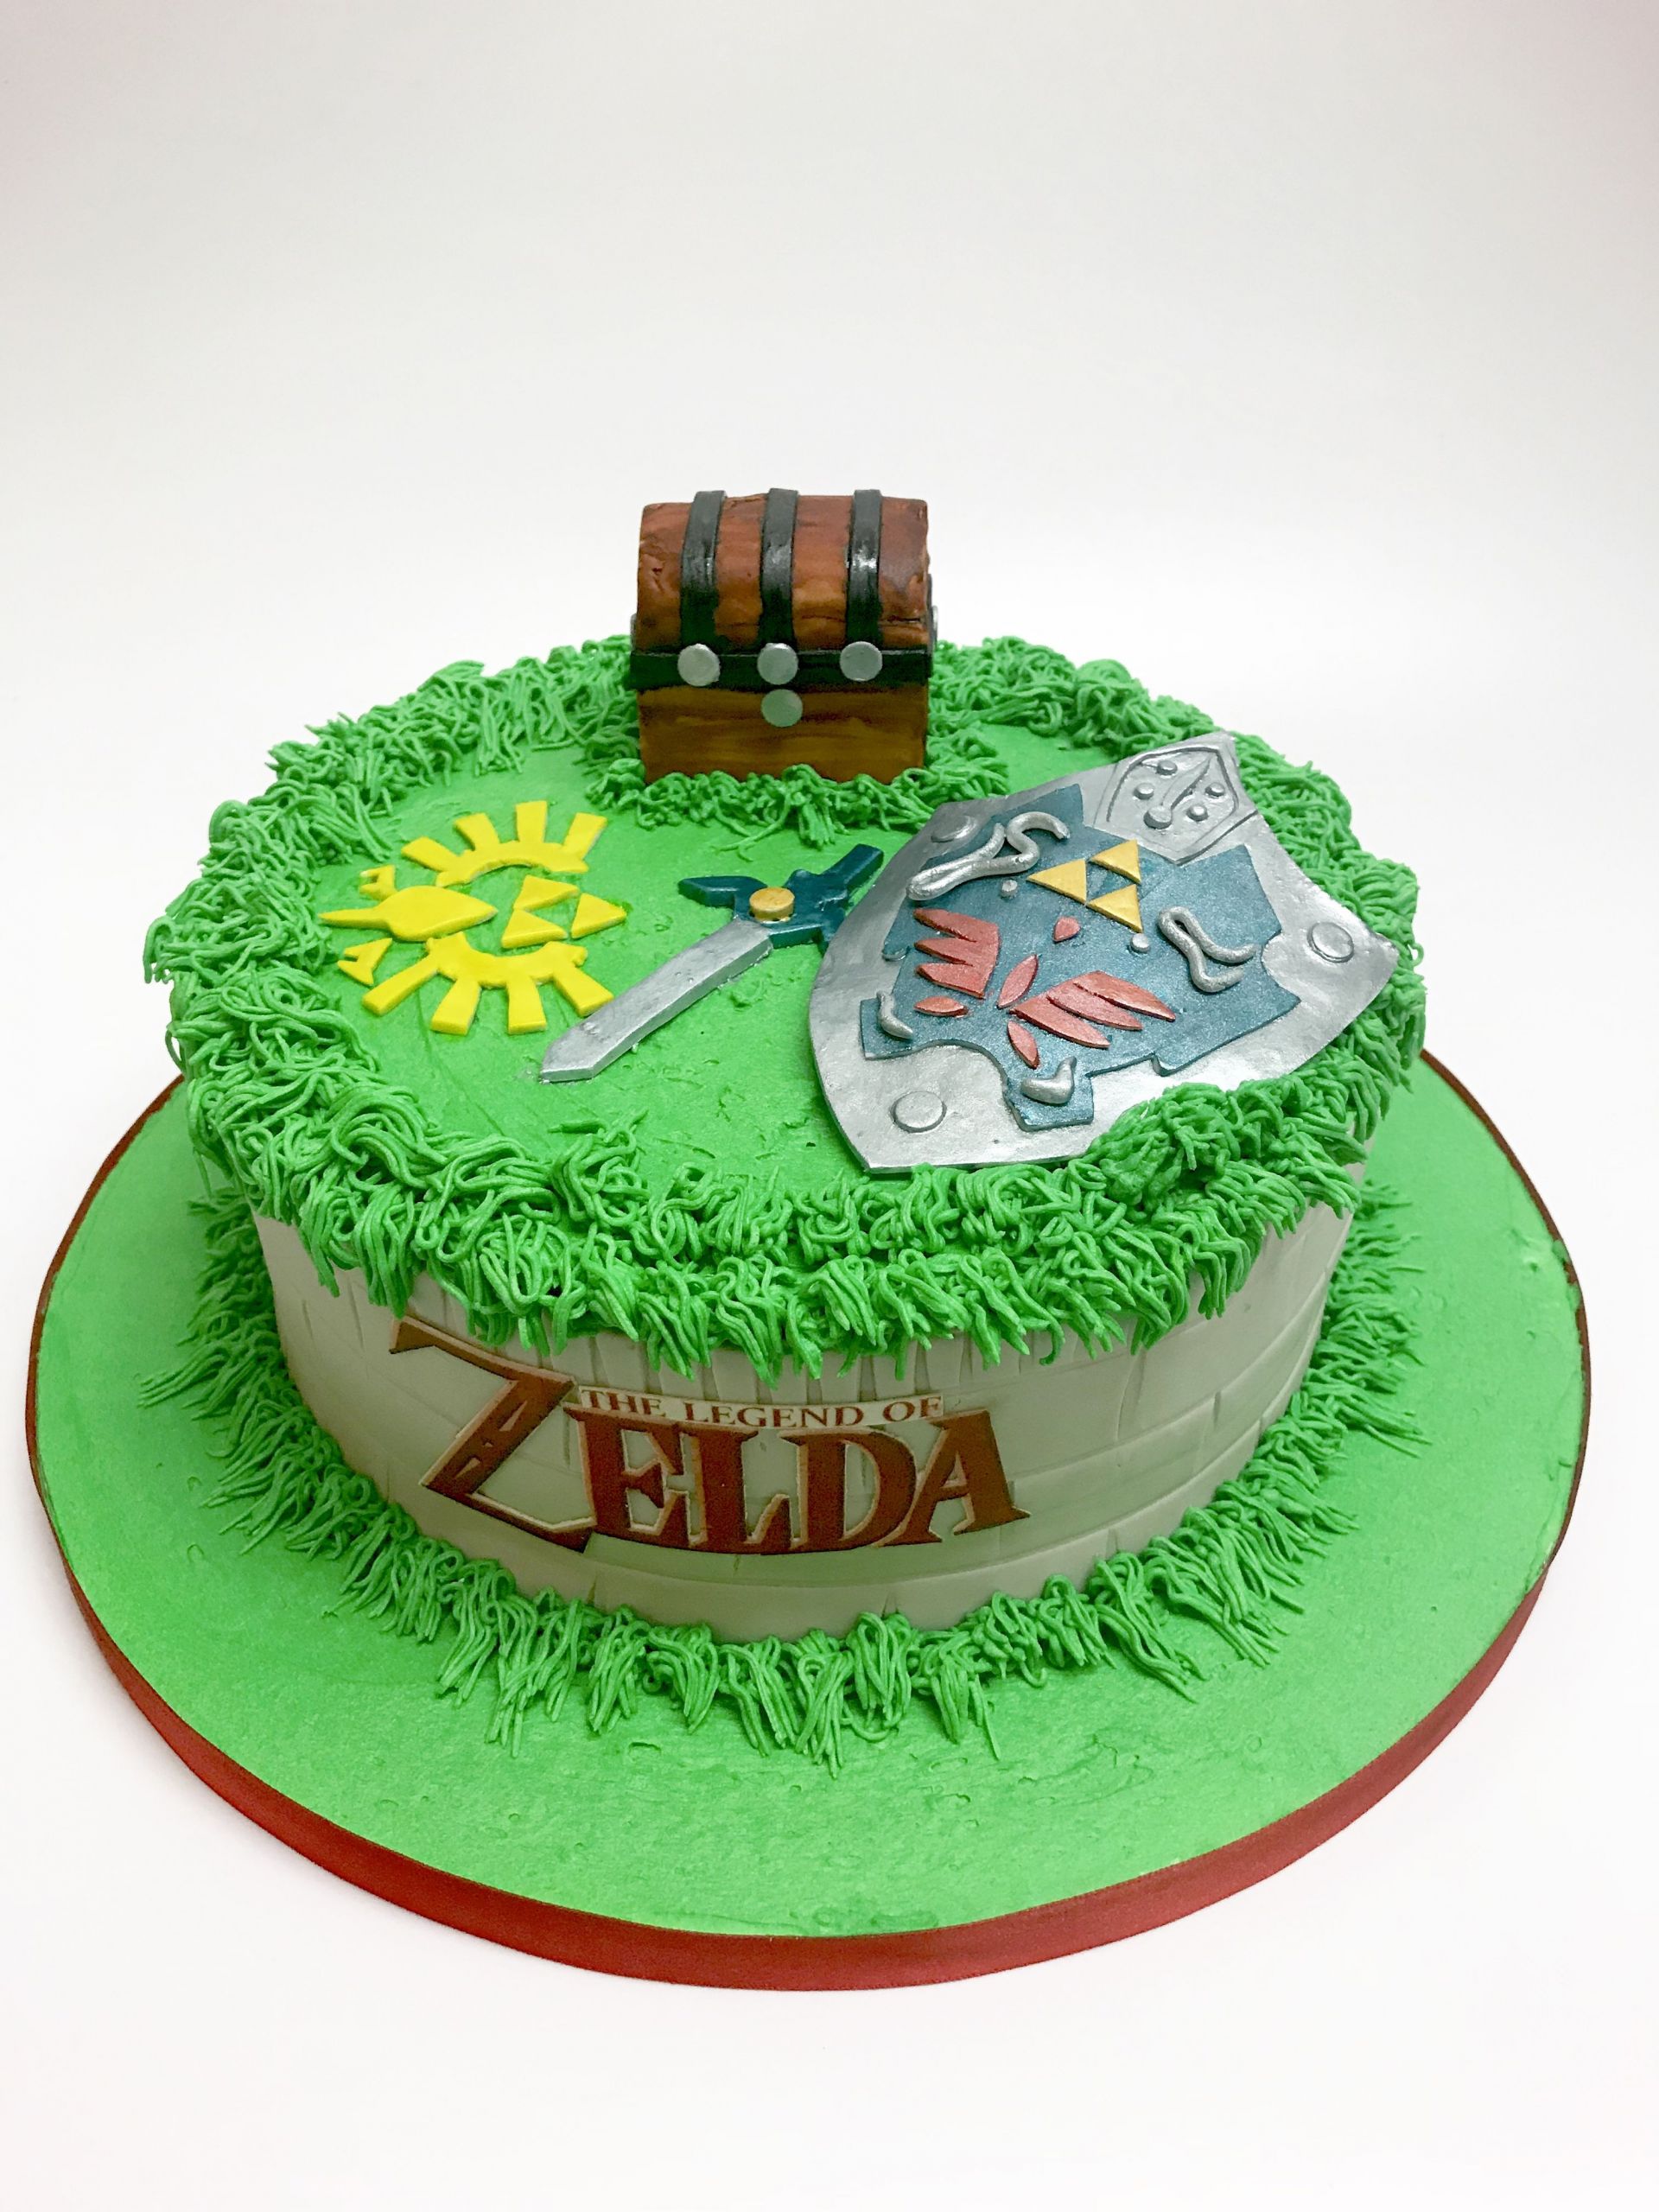 Zelda Birthday Cake
 The Legend of Zelda birthday cake